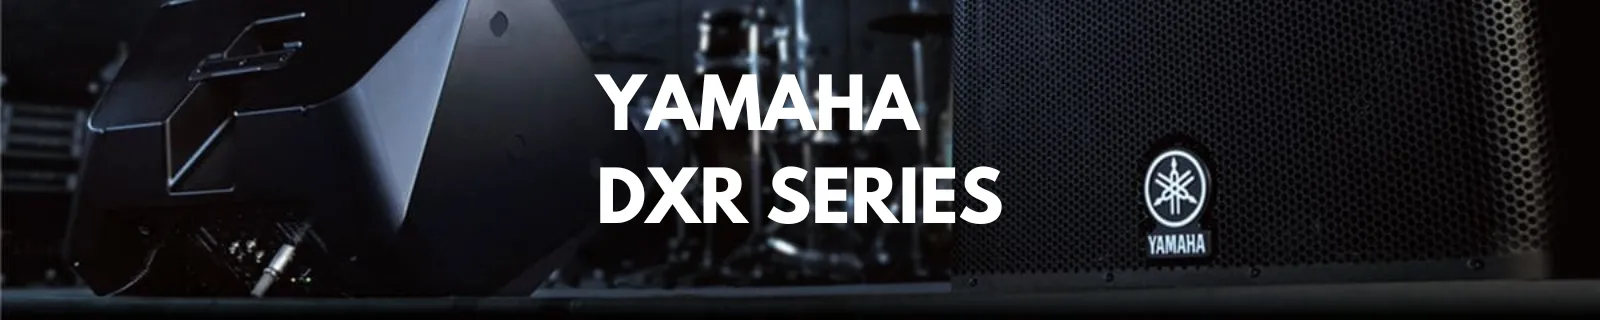 Yamaha DXR Series